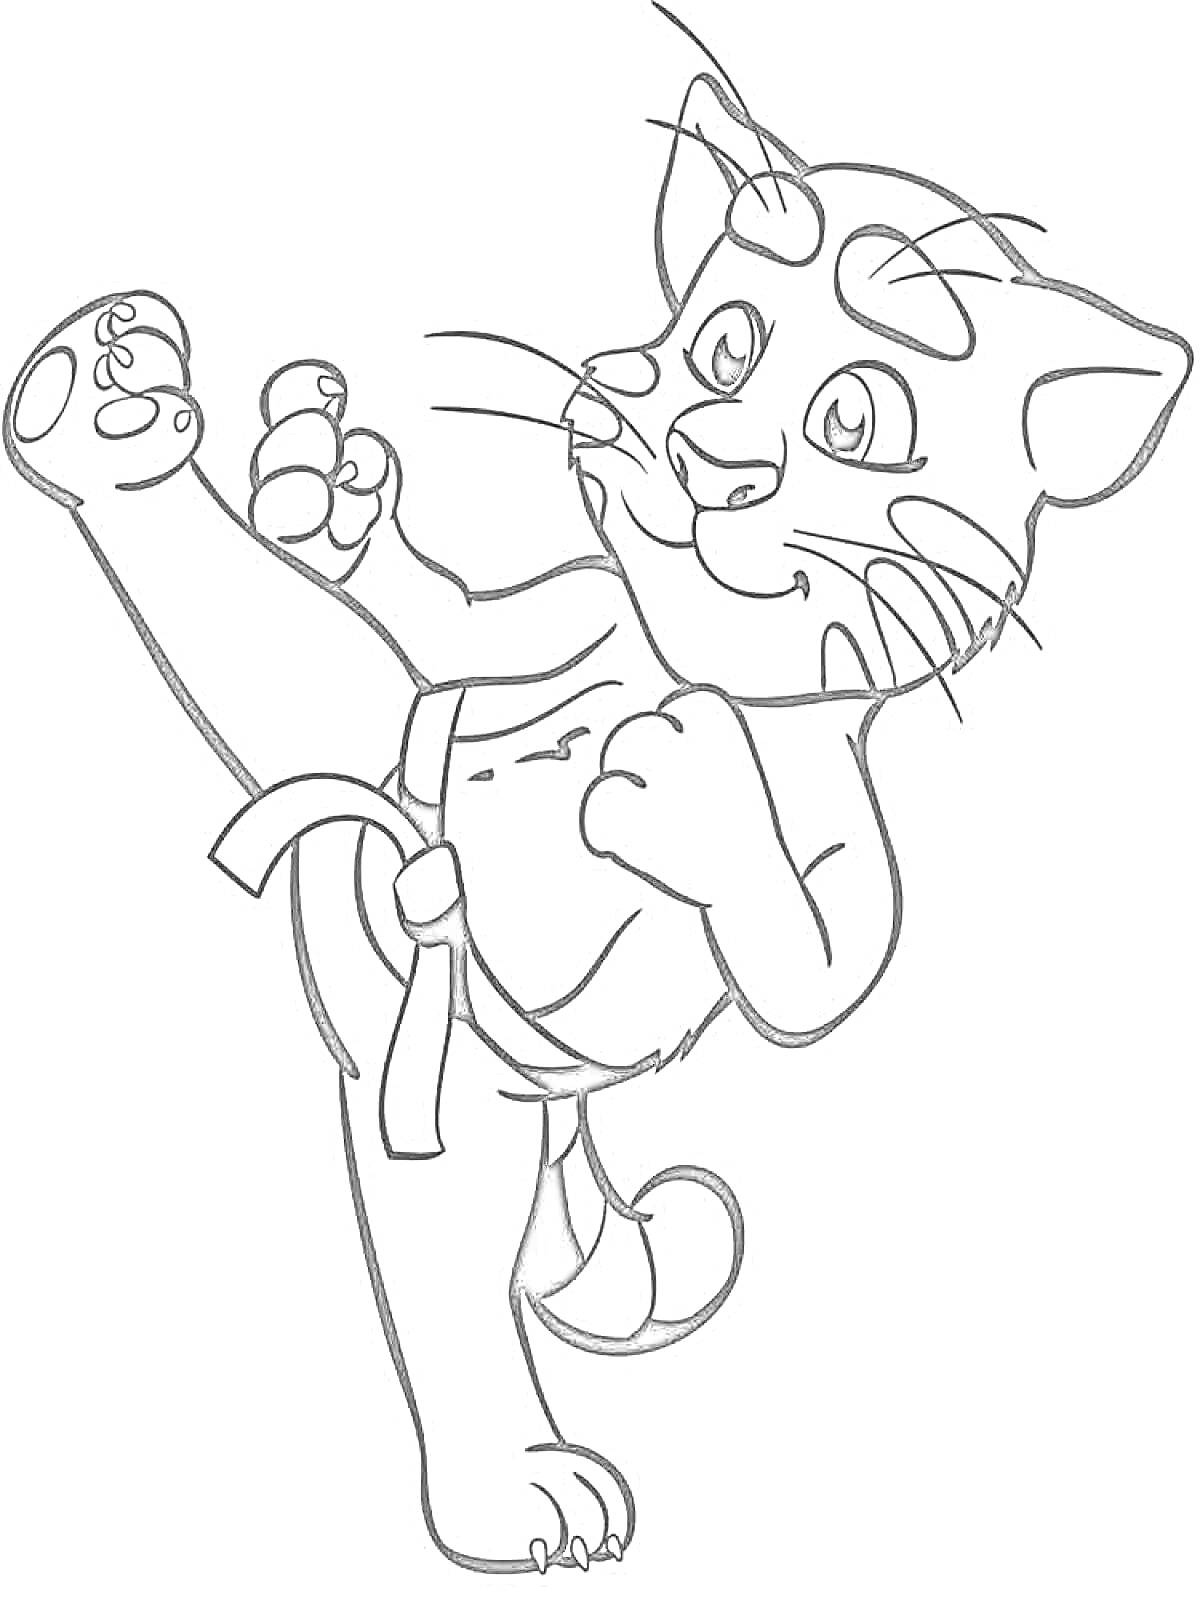 Раскраска Кот в боевых искусствах с поднимающейся ногой и бойцовской стойкой